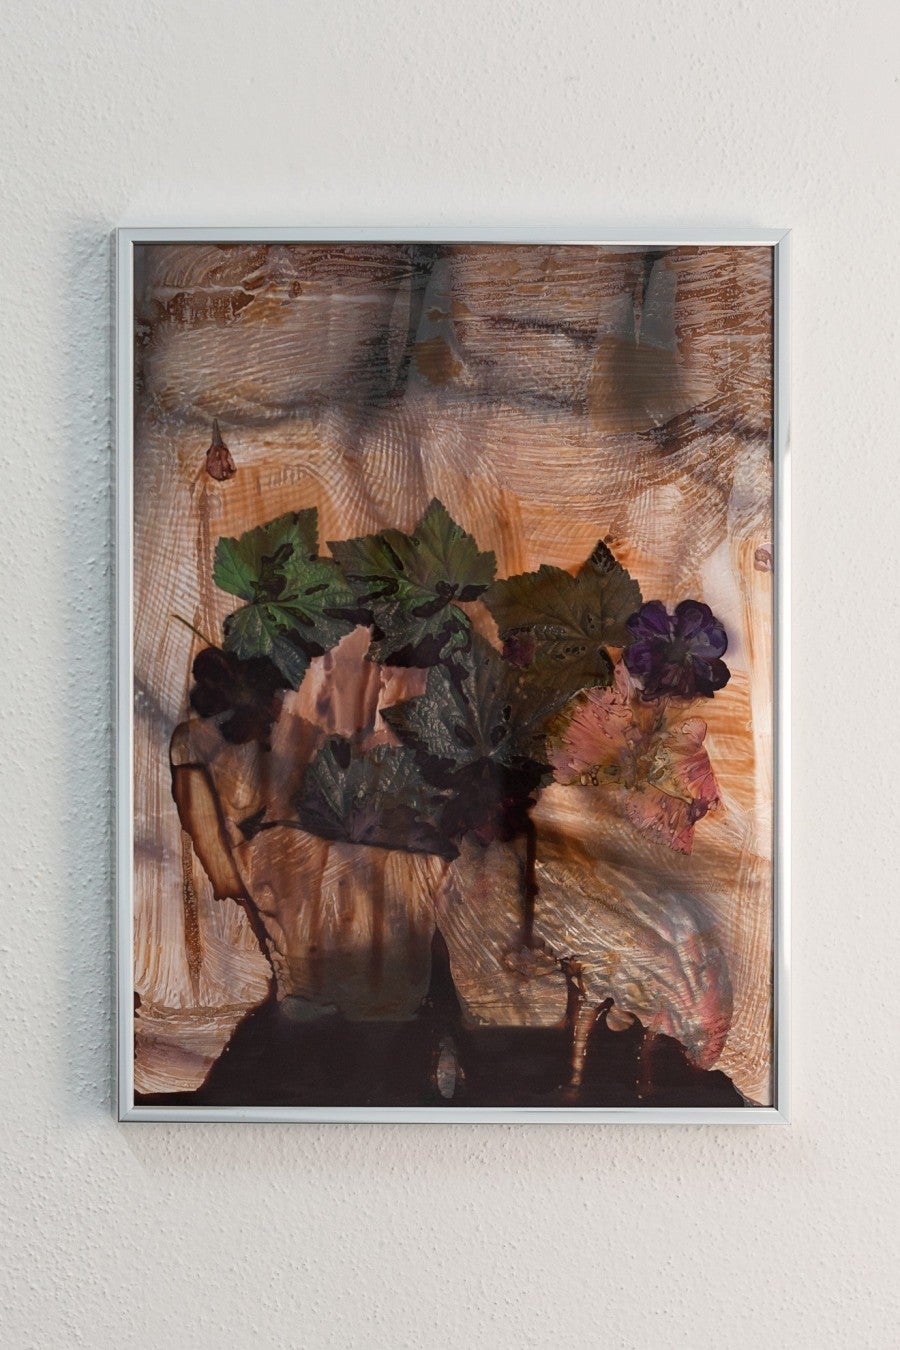 Chloé Quenum, Augure, 2016. Impression et végétaux, 30 x 40 cm.